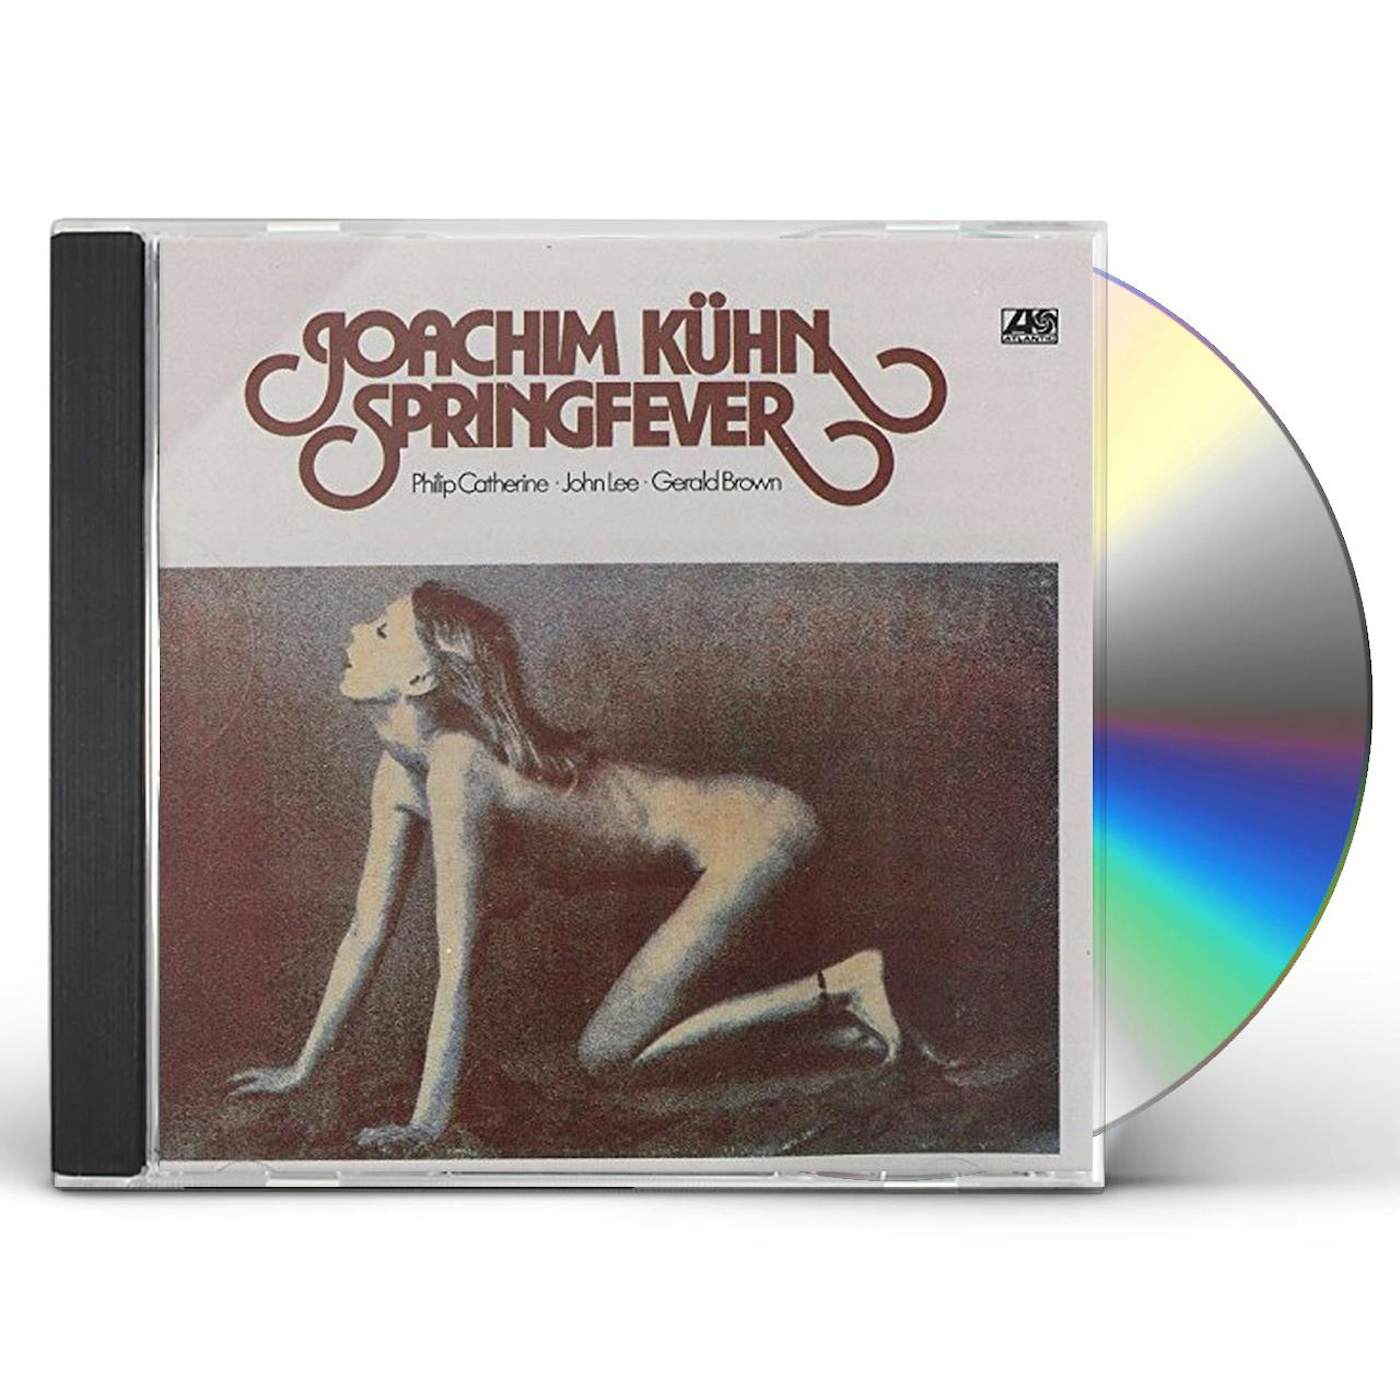 Joachim Kuhn SPRINGFEVER CD